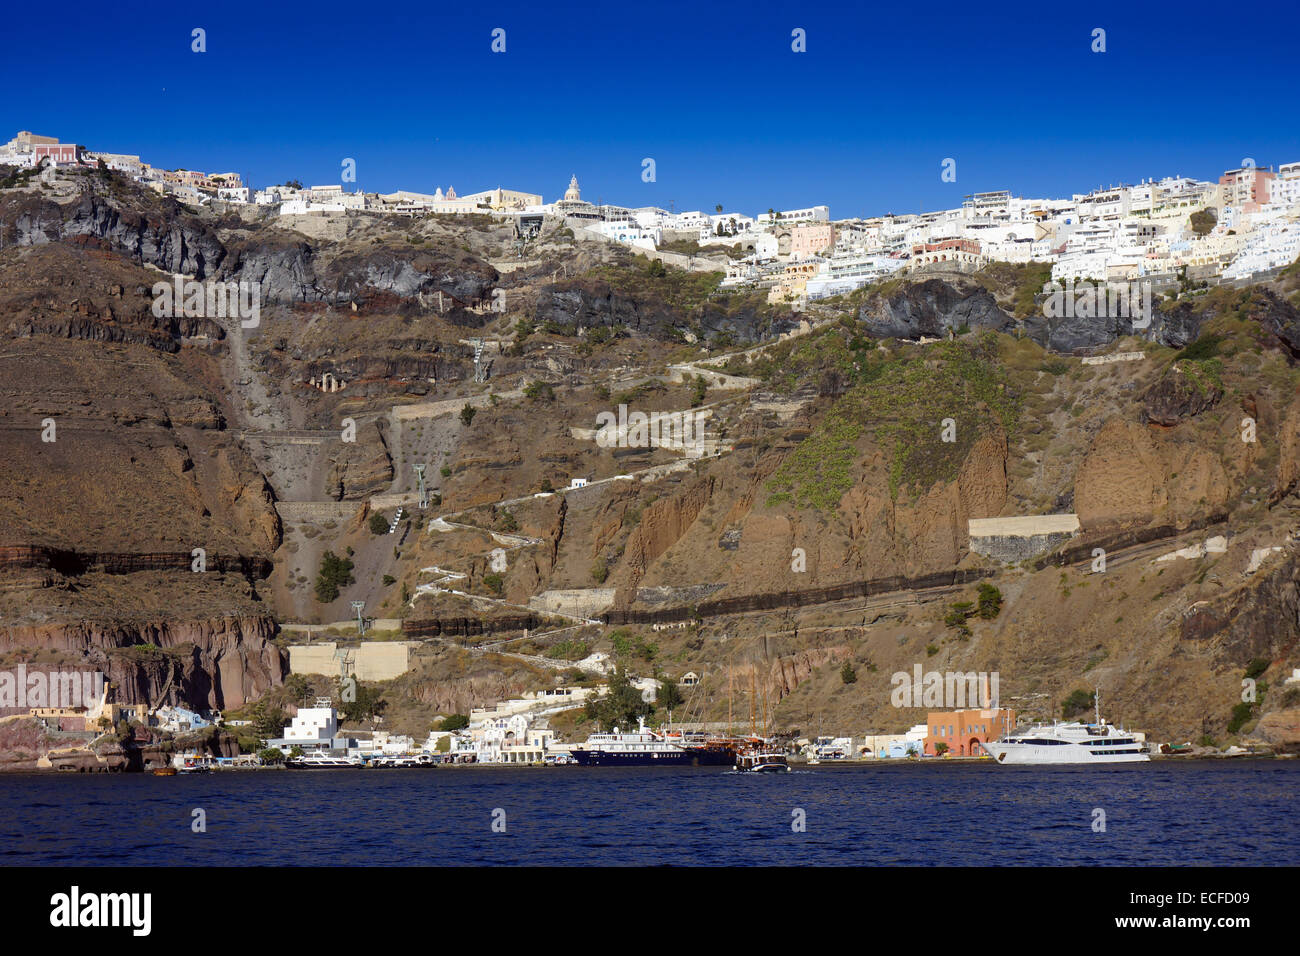 Case bianche dal mare blu sul bordo della caldera, il cratere vulcanico, Santorini con barche ormeggiate e a zig-zag percorso di asino Foto Stock